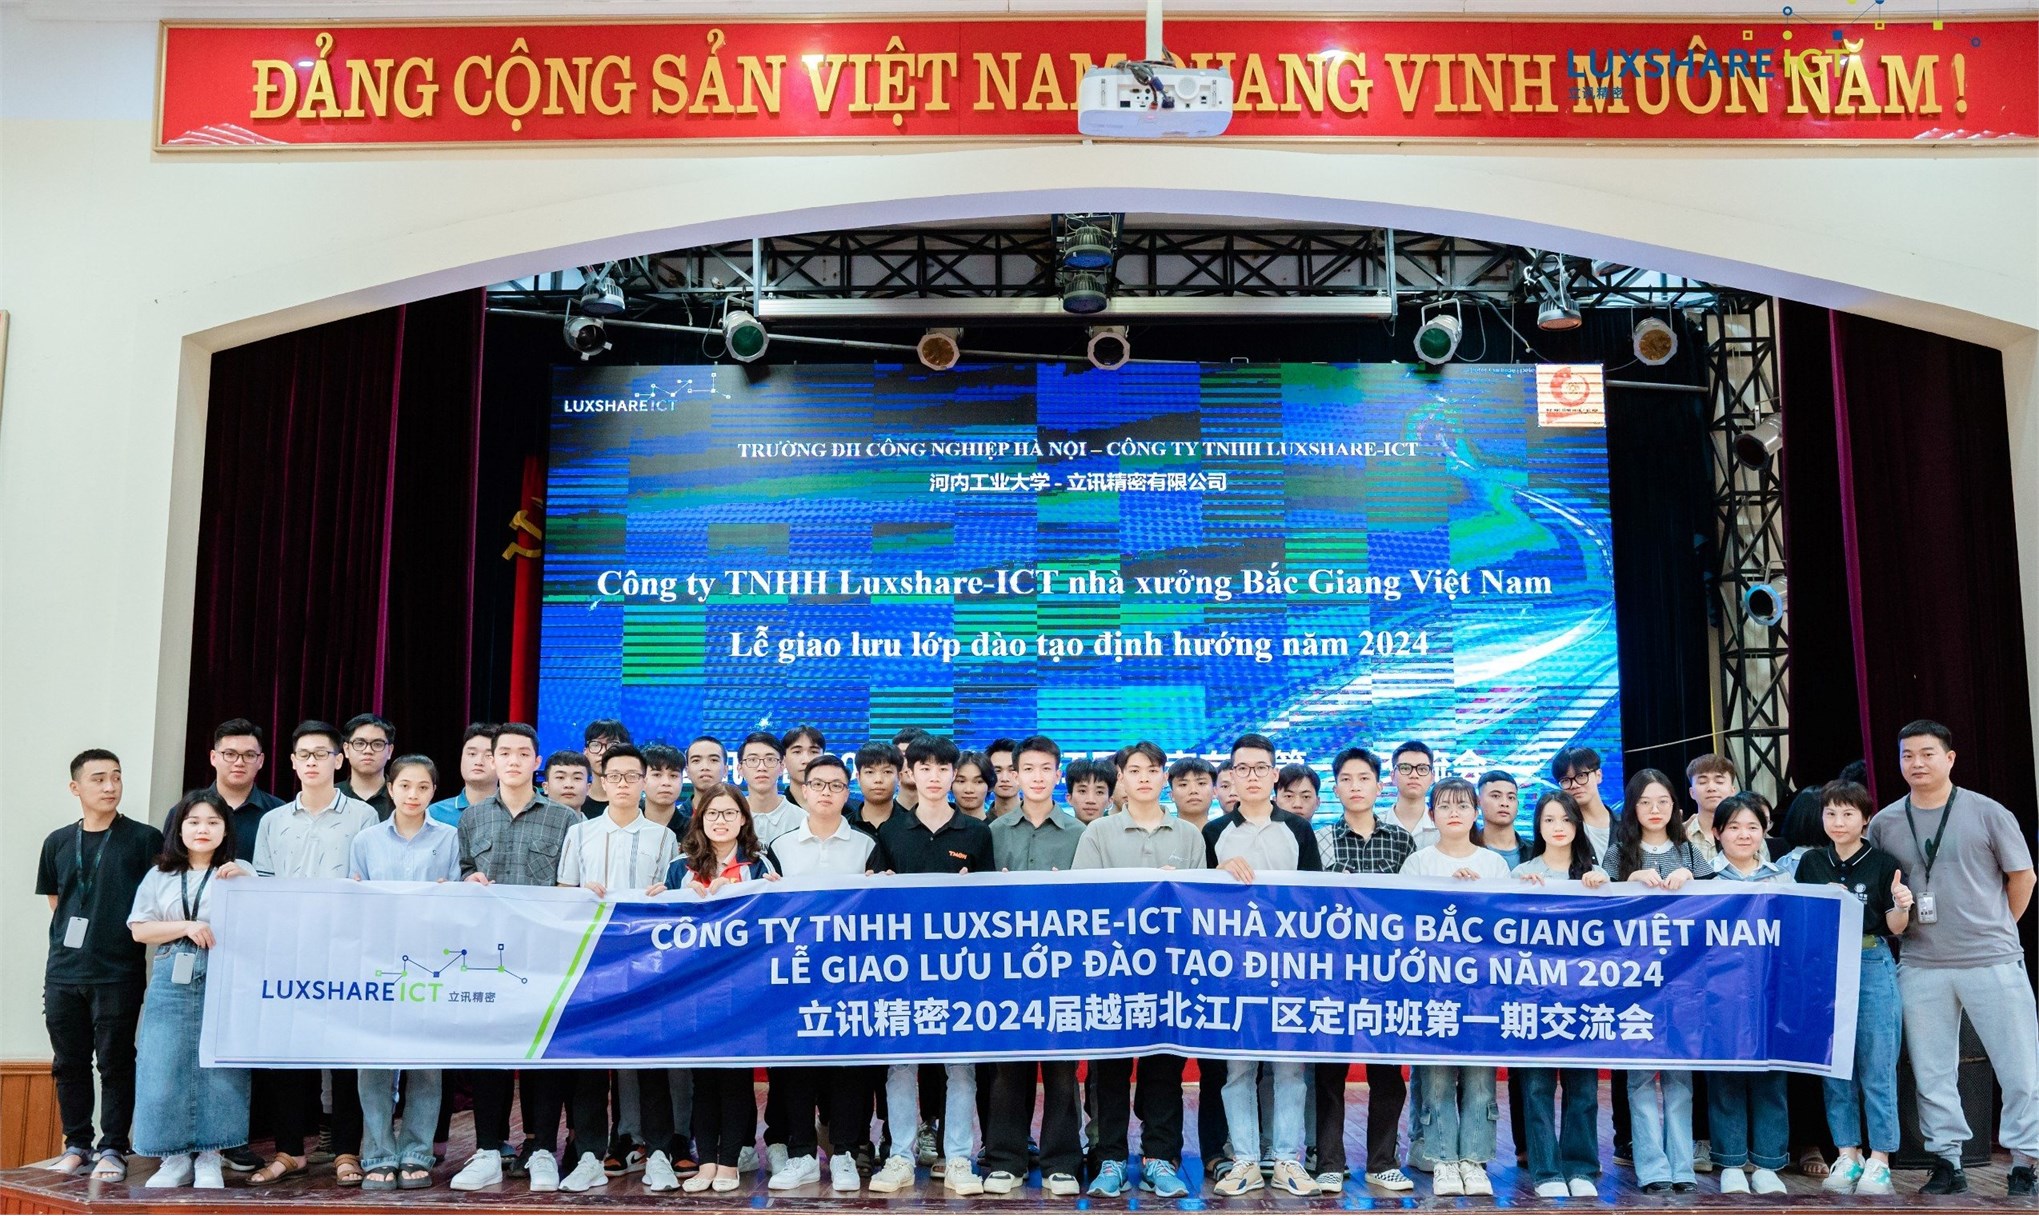 Giao lưu, đối thoại giữa lãnh đạo Công ty TNHH Luxshare-ICT và sinh viên Lớp định hướng khóa 2